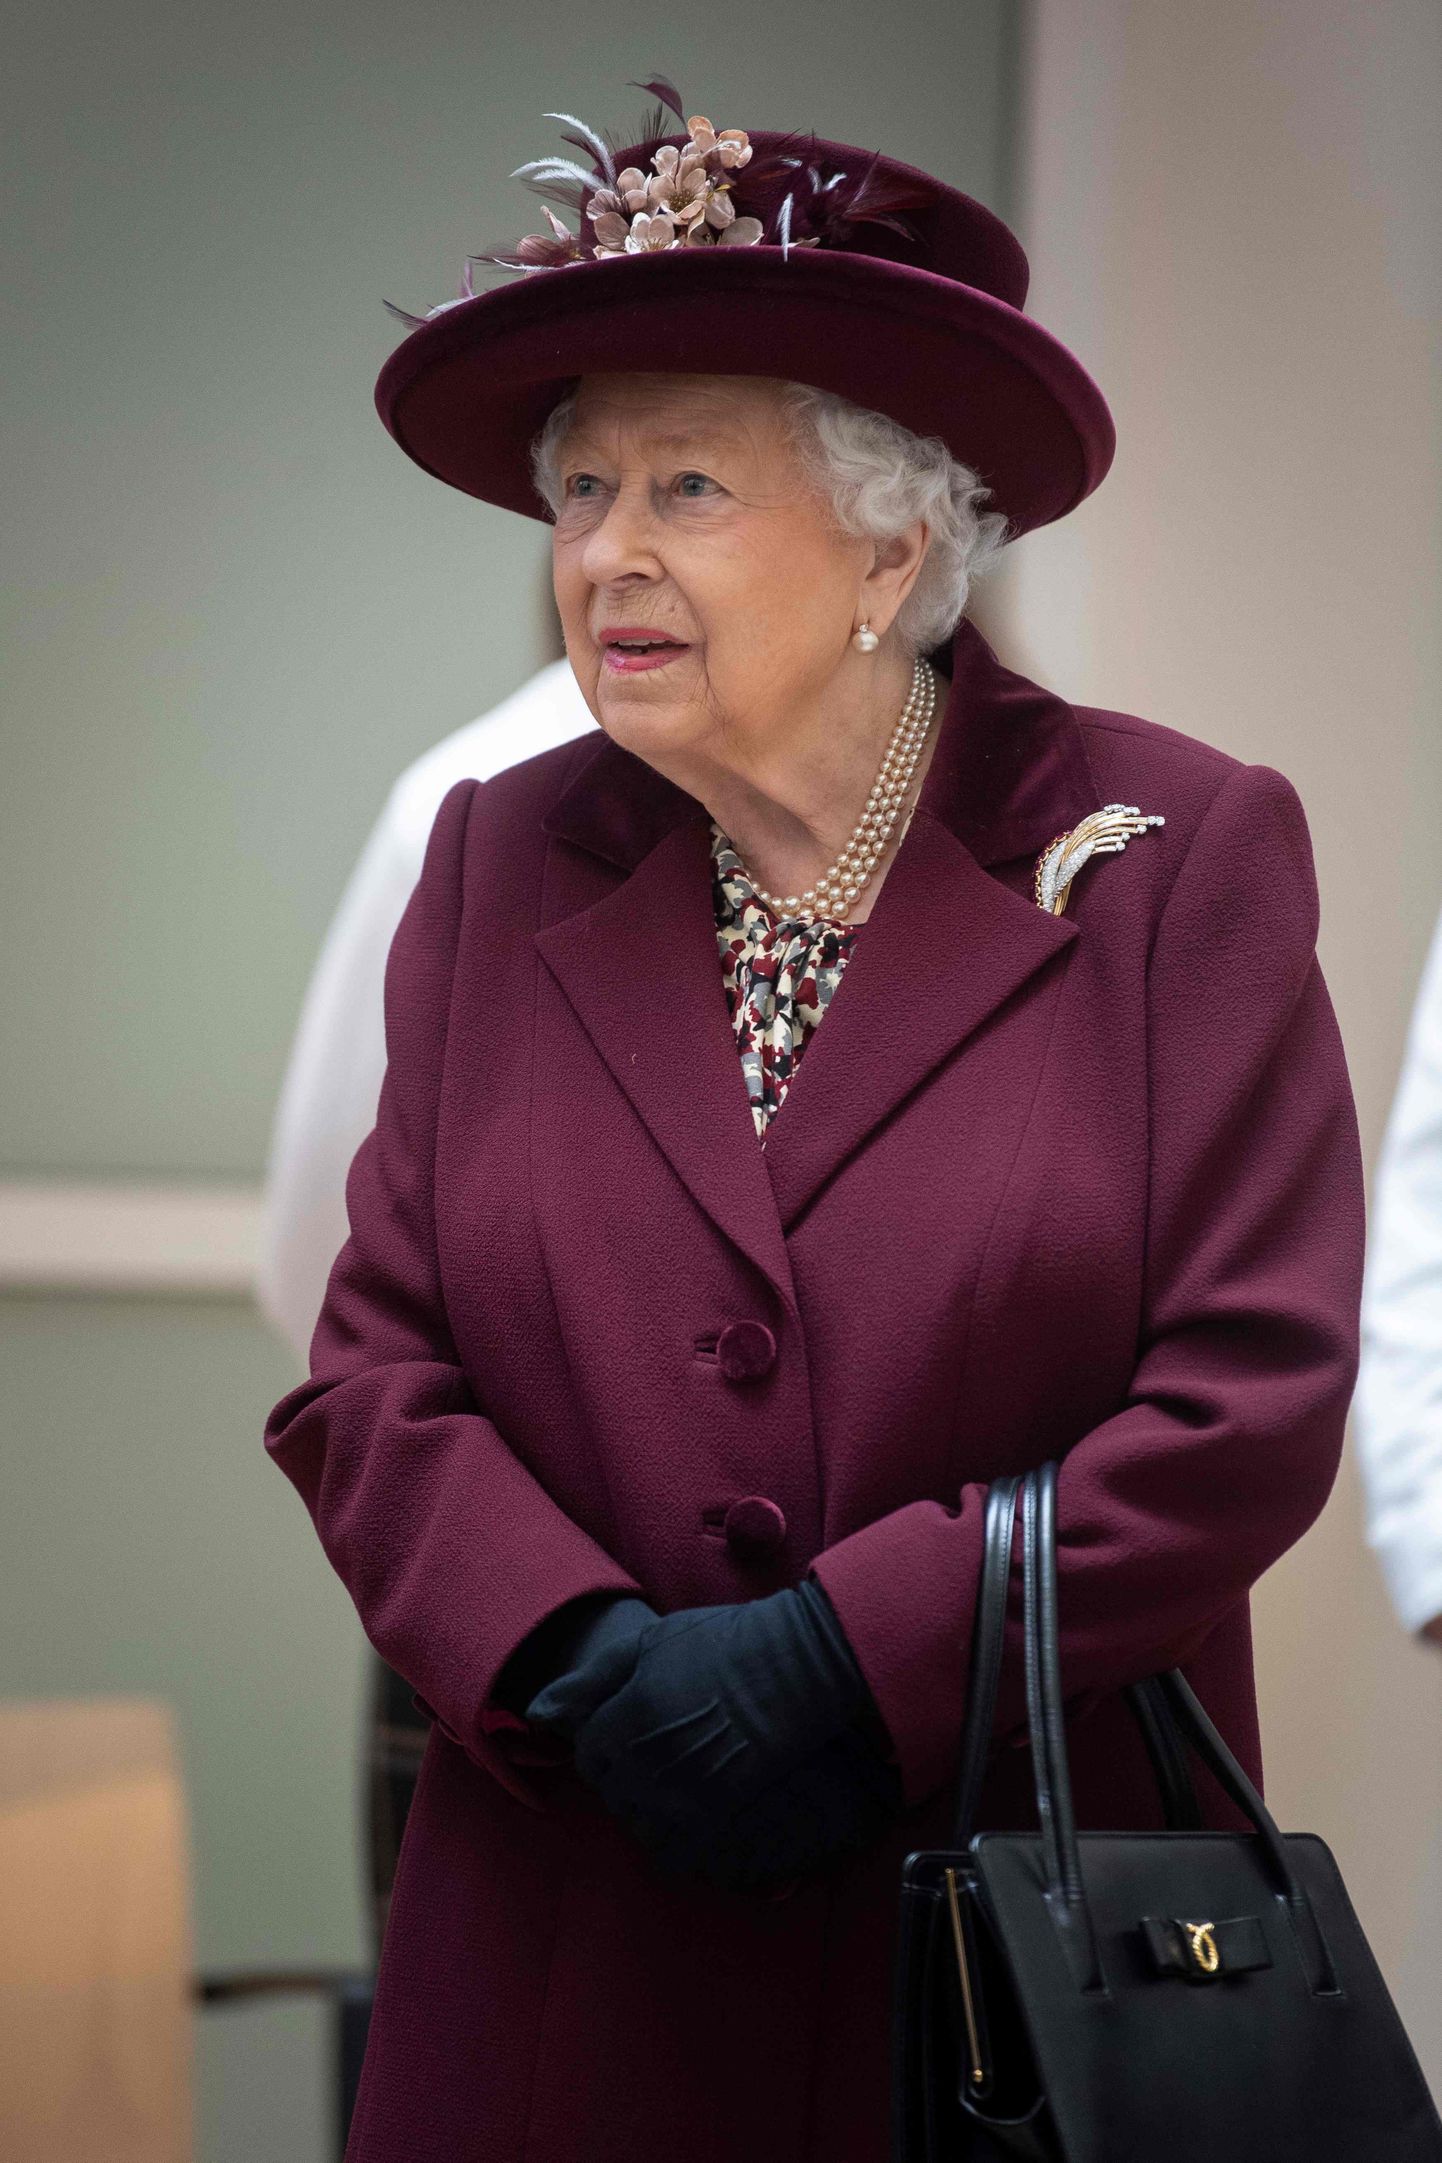 Briti kuninganna Elizabeth II 25. veebruaril 2020 Londonis MI5 ehk Briti vastuluureteenistuse peakorteris visiidil